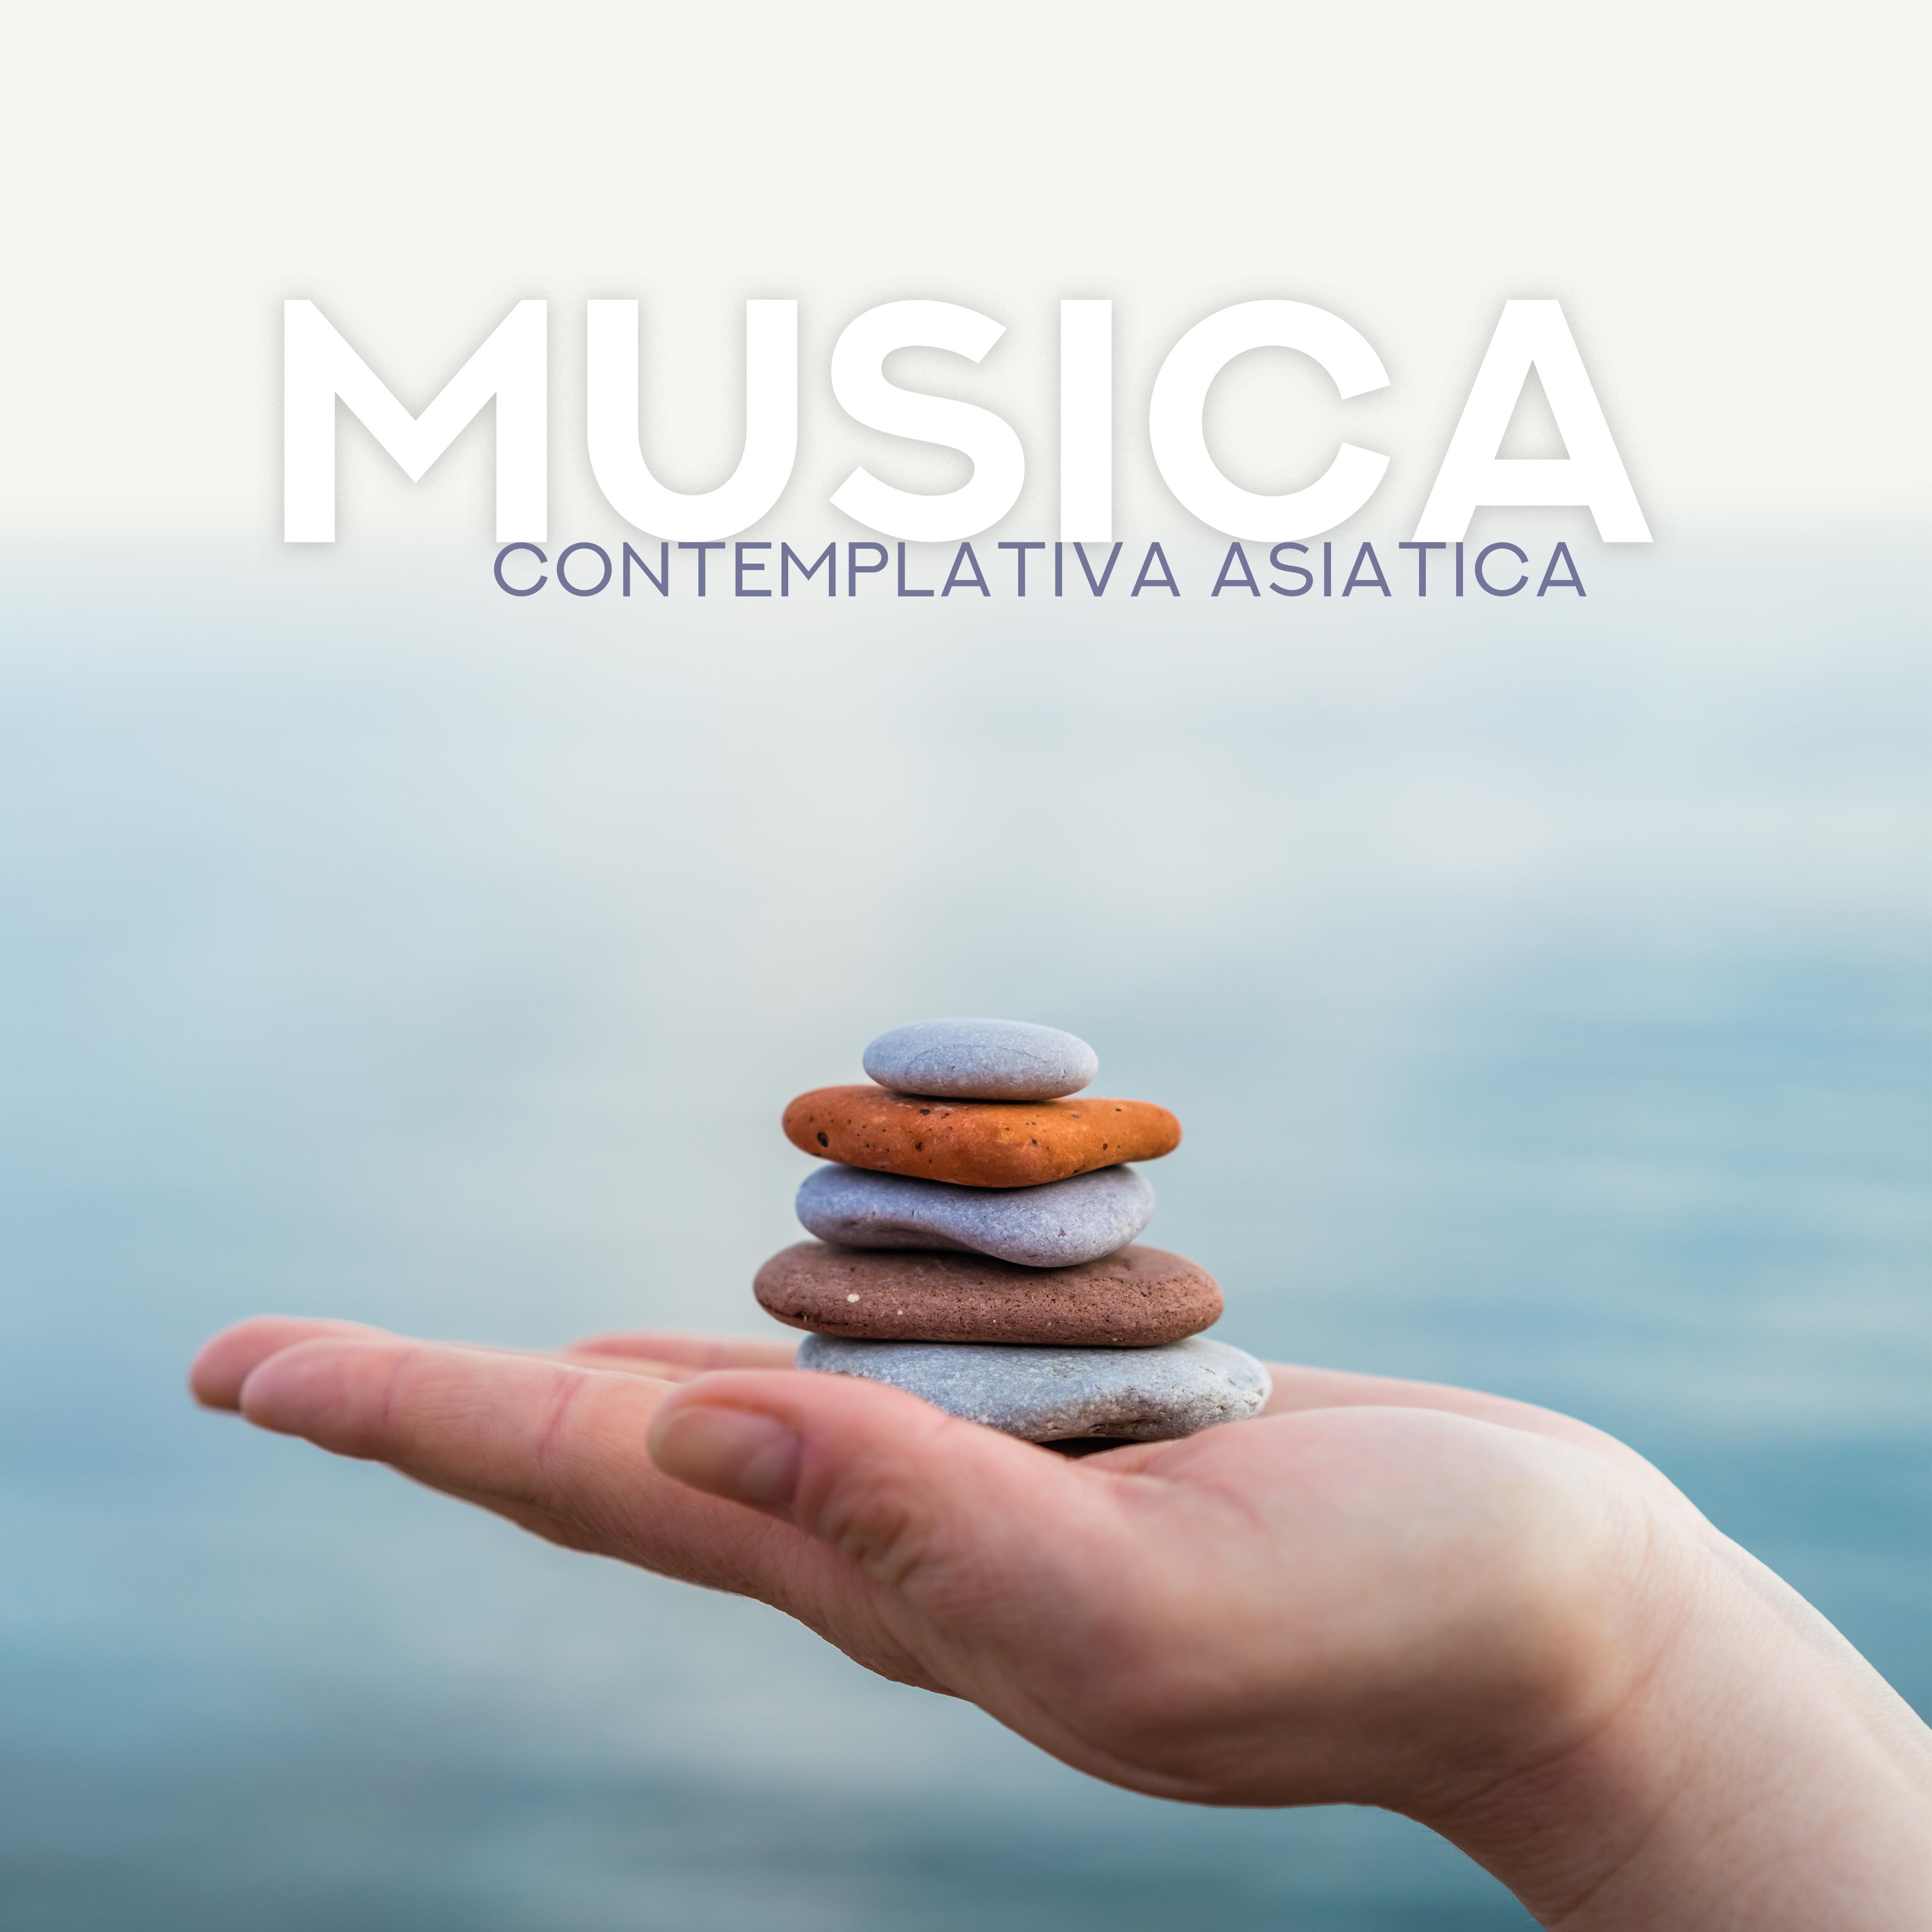 Musica Contemplativa Asiatica - per la Meditazione, lo Yoga, lo Zen, il Sonno o la Terapia Antistress